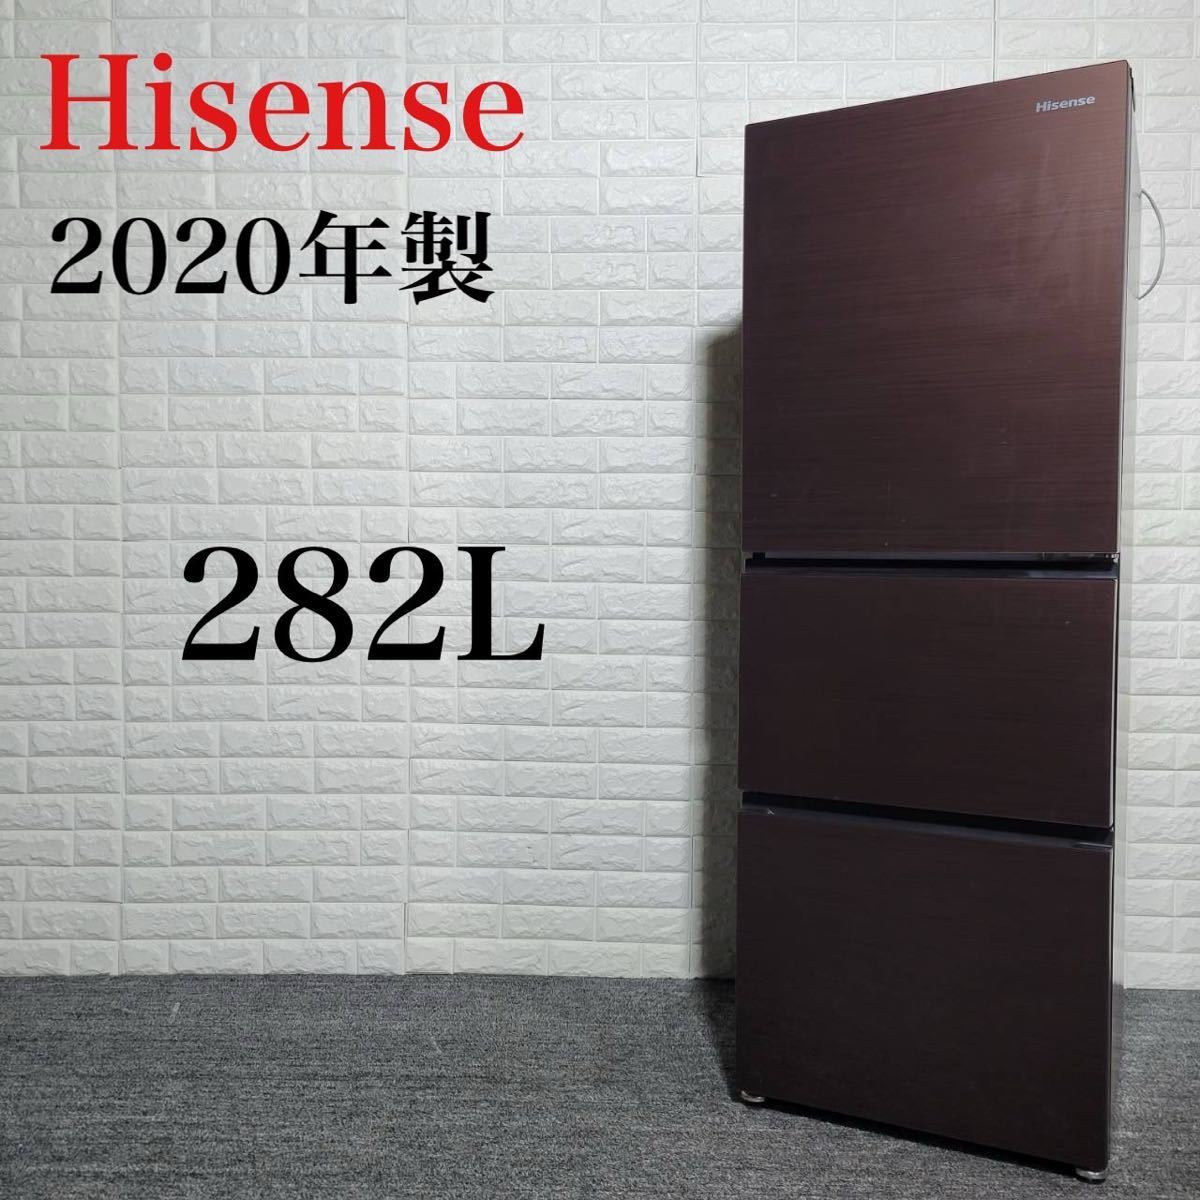 Hisense 冷蔵庫 HR-G2801BR 2020年製 282L B044